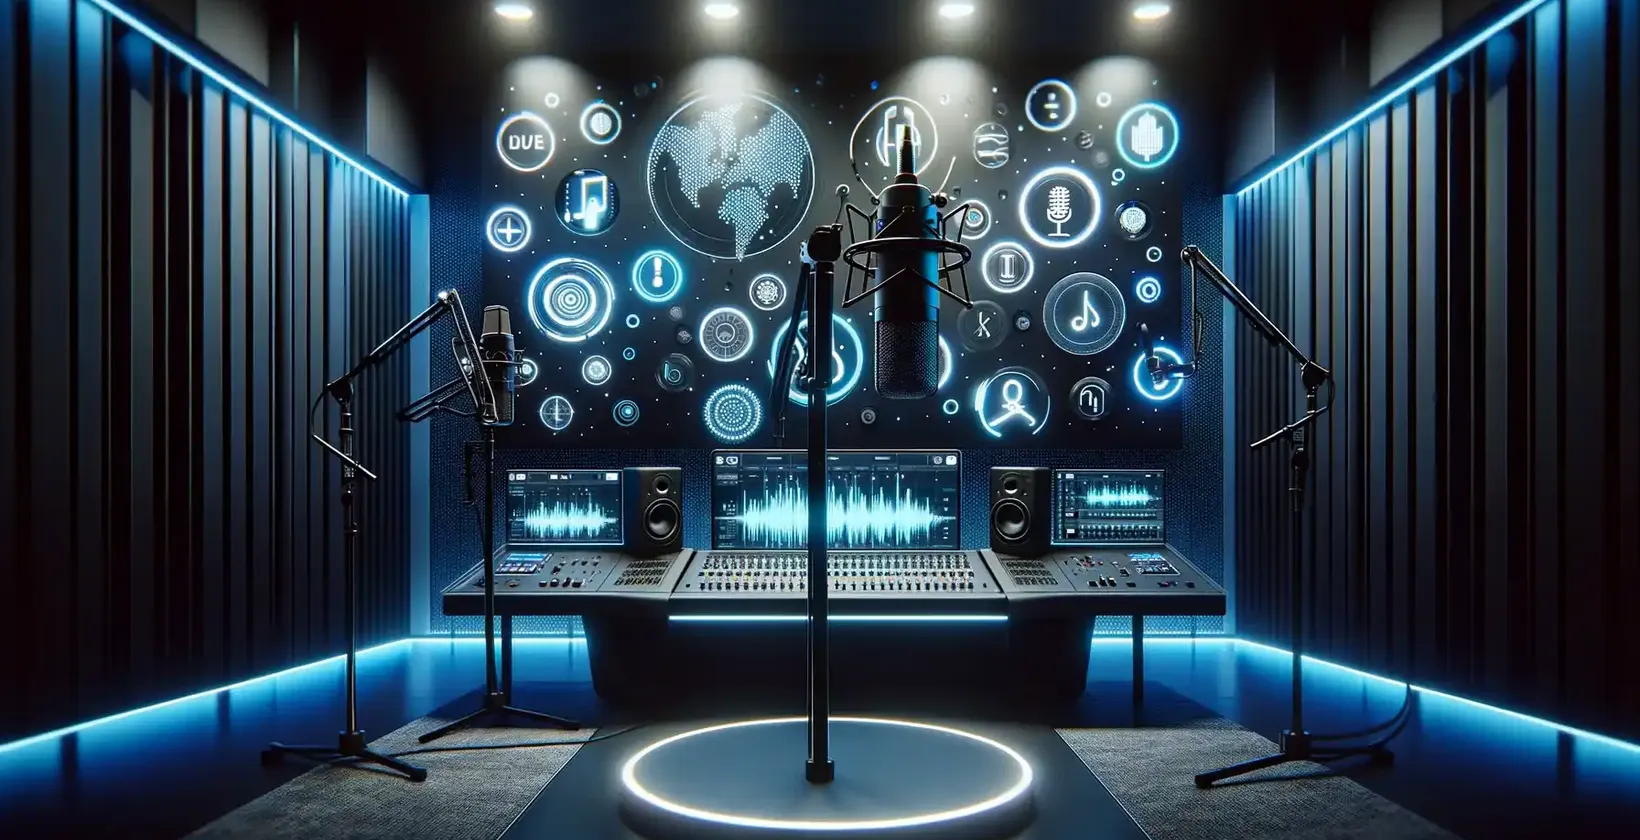 마이크와 오디오 기호 표시가 있는 스튜디오에서 예시된 음성-텍스트 변환기